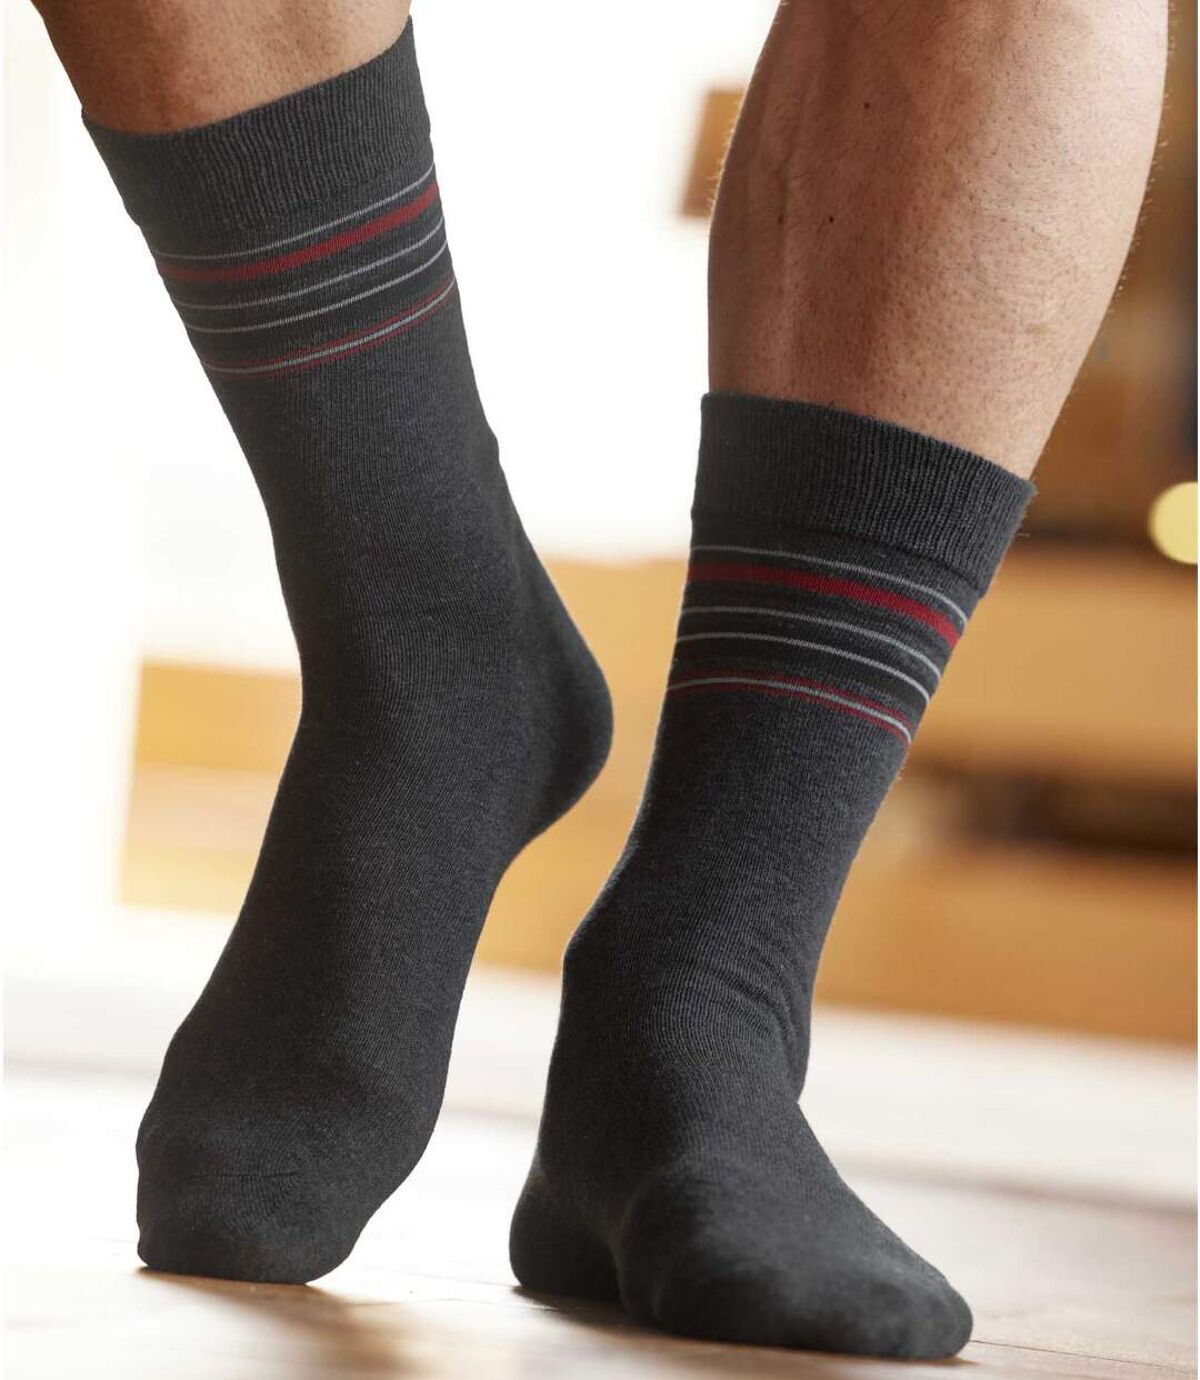 Pack of 4 Pairs of Men's Patterned Socks - Black Grey Blue  Atlas For Men